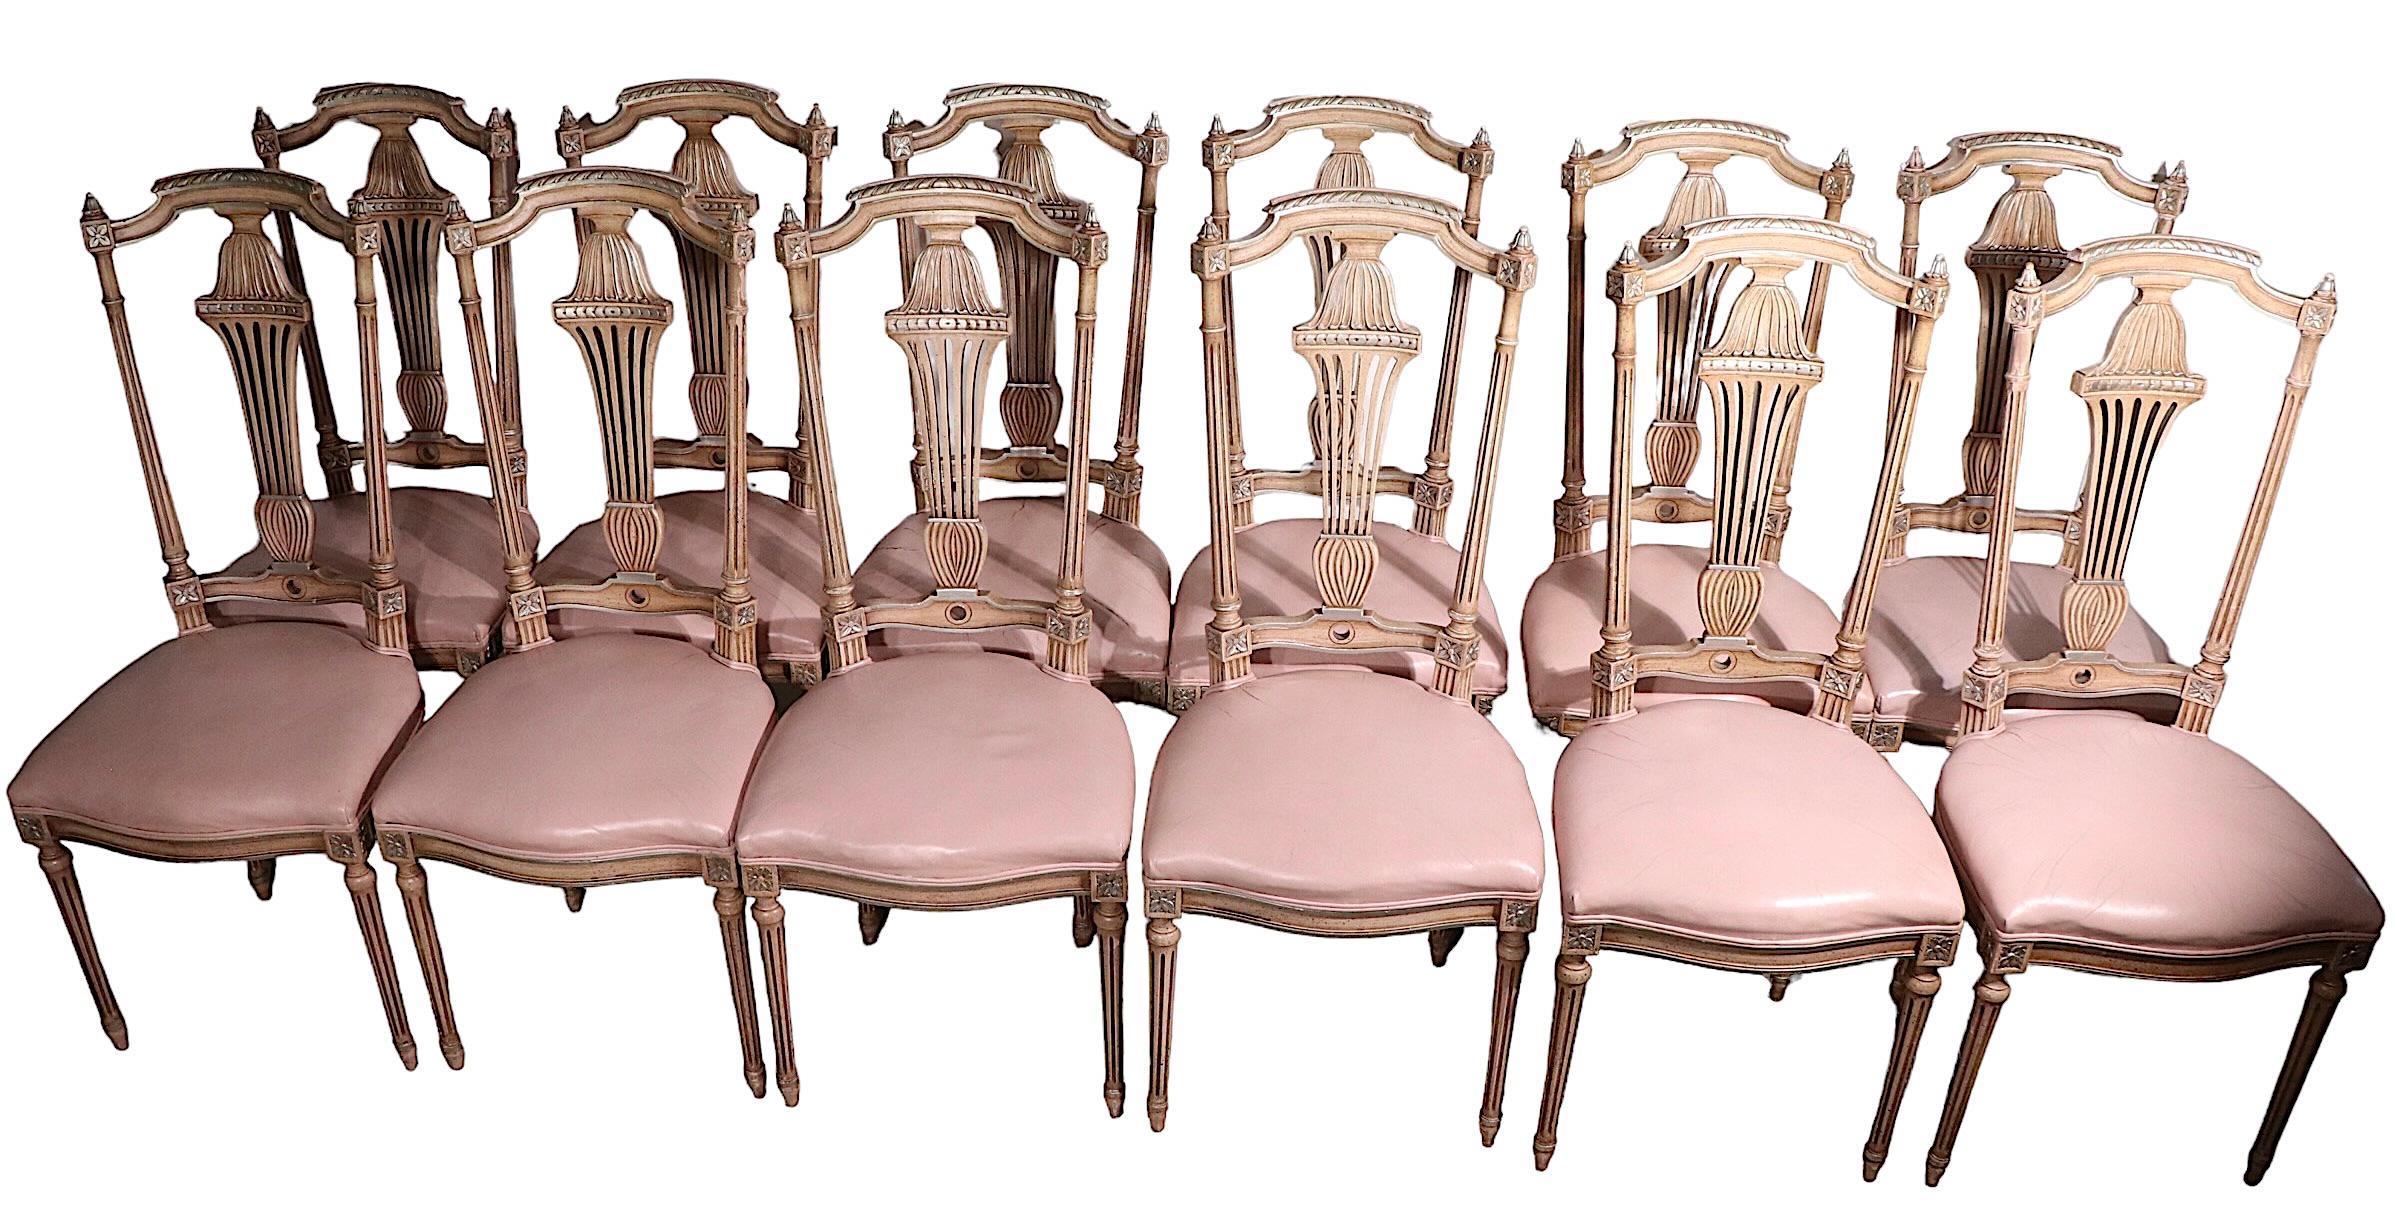 Superbe ensemble de 12 chaises de salle à manger assorties, en bois sculpté, doré et peint, avec des sièges en cuir rose bubble gum inattendus et intrigants. Il est presque impossible de trouver de grands ensembles de chaises à manger élégantes. Ces